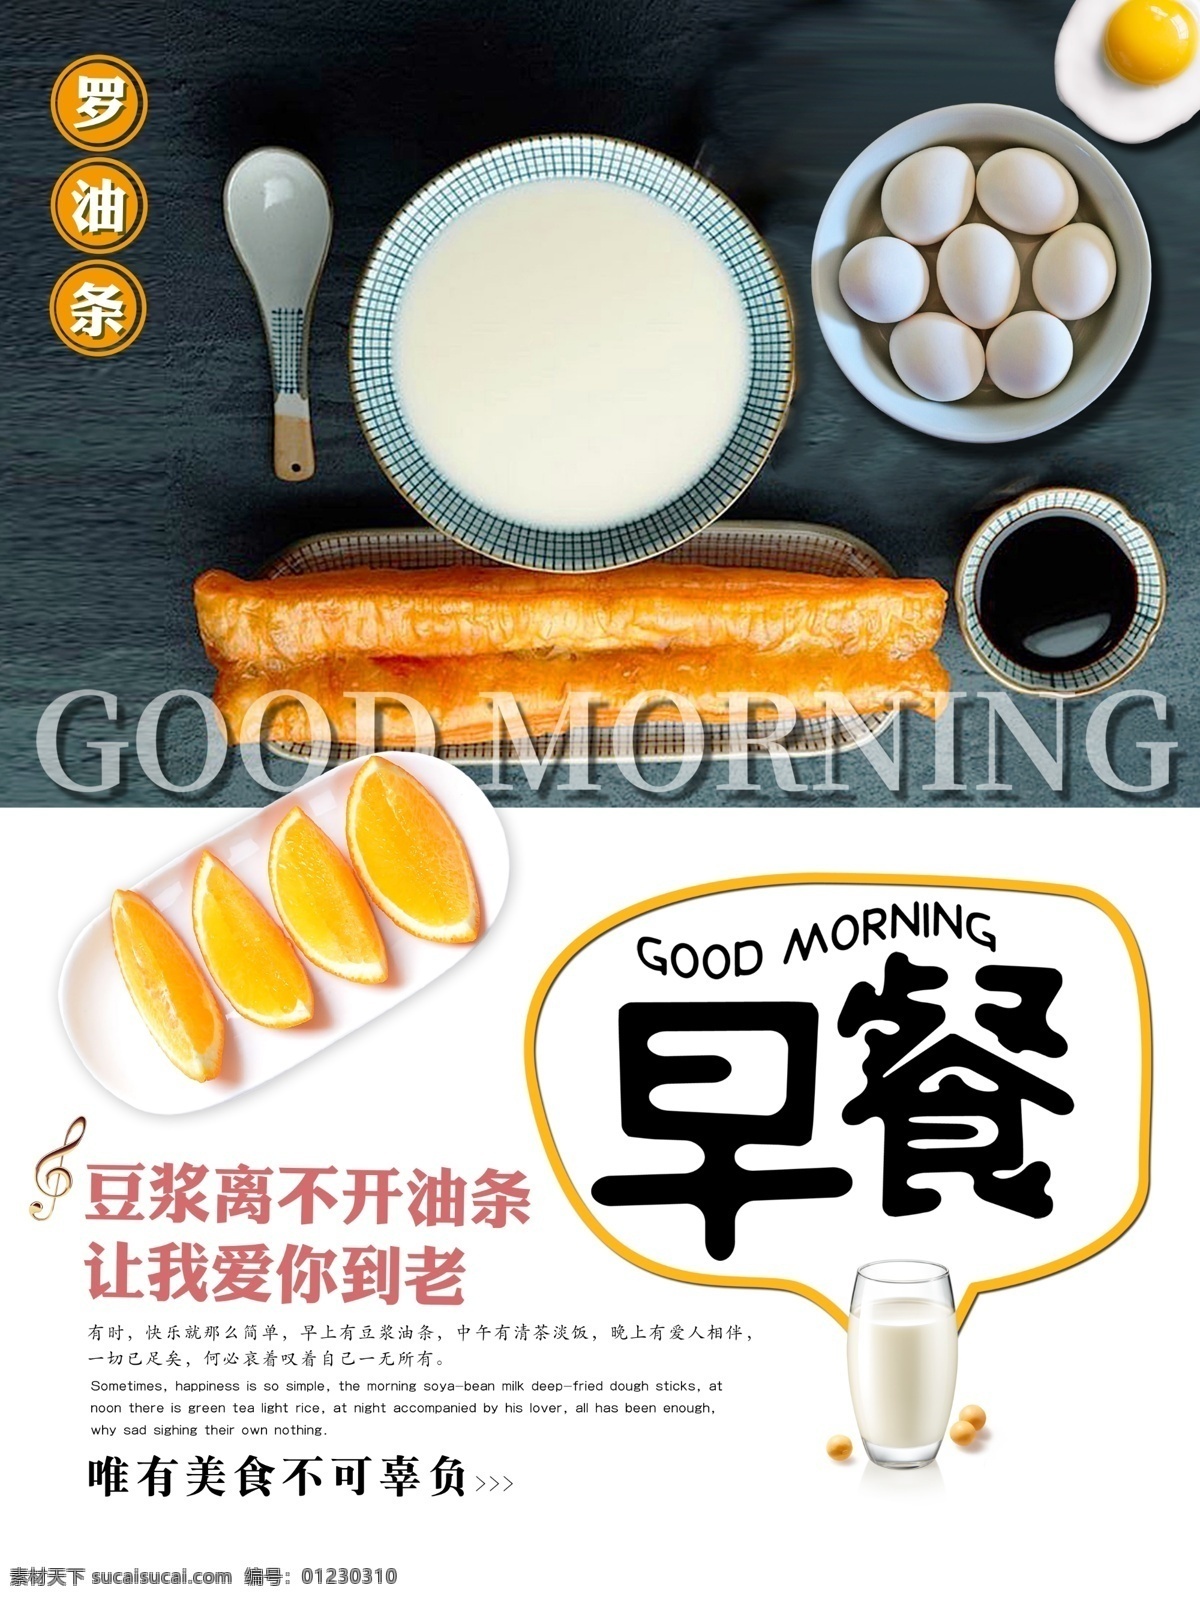 豆浆油条 豆浆 油条 鸡蛋 早餐 美食 美味 x4 爱心 海报